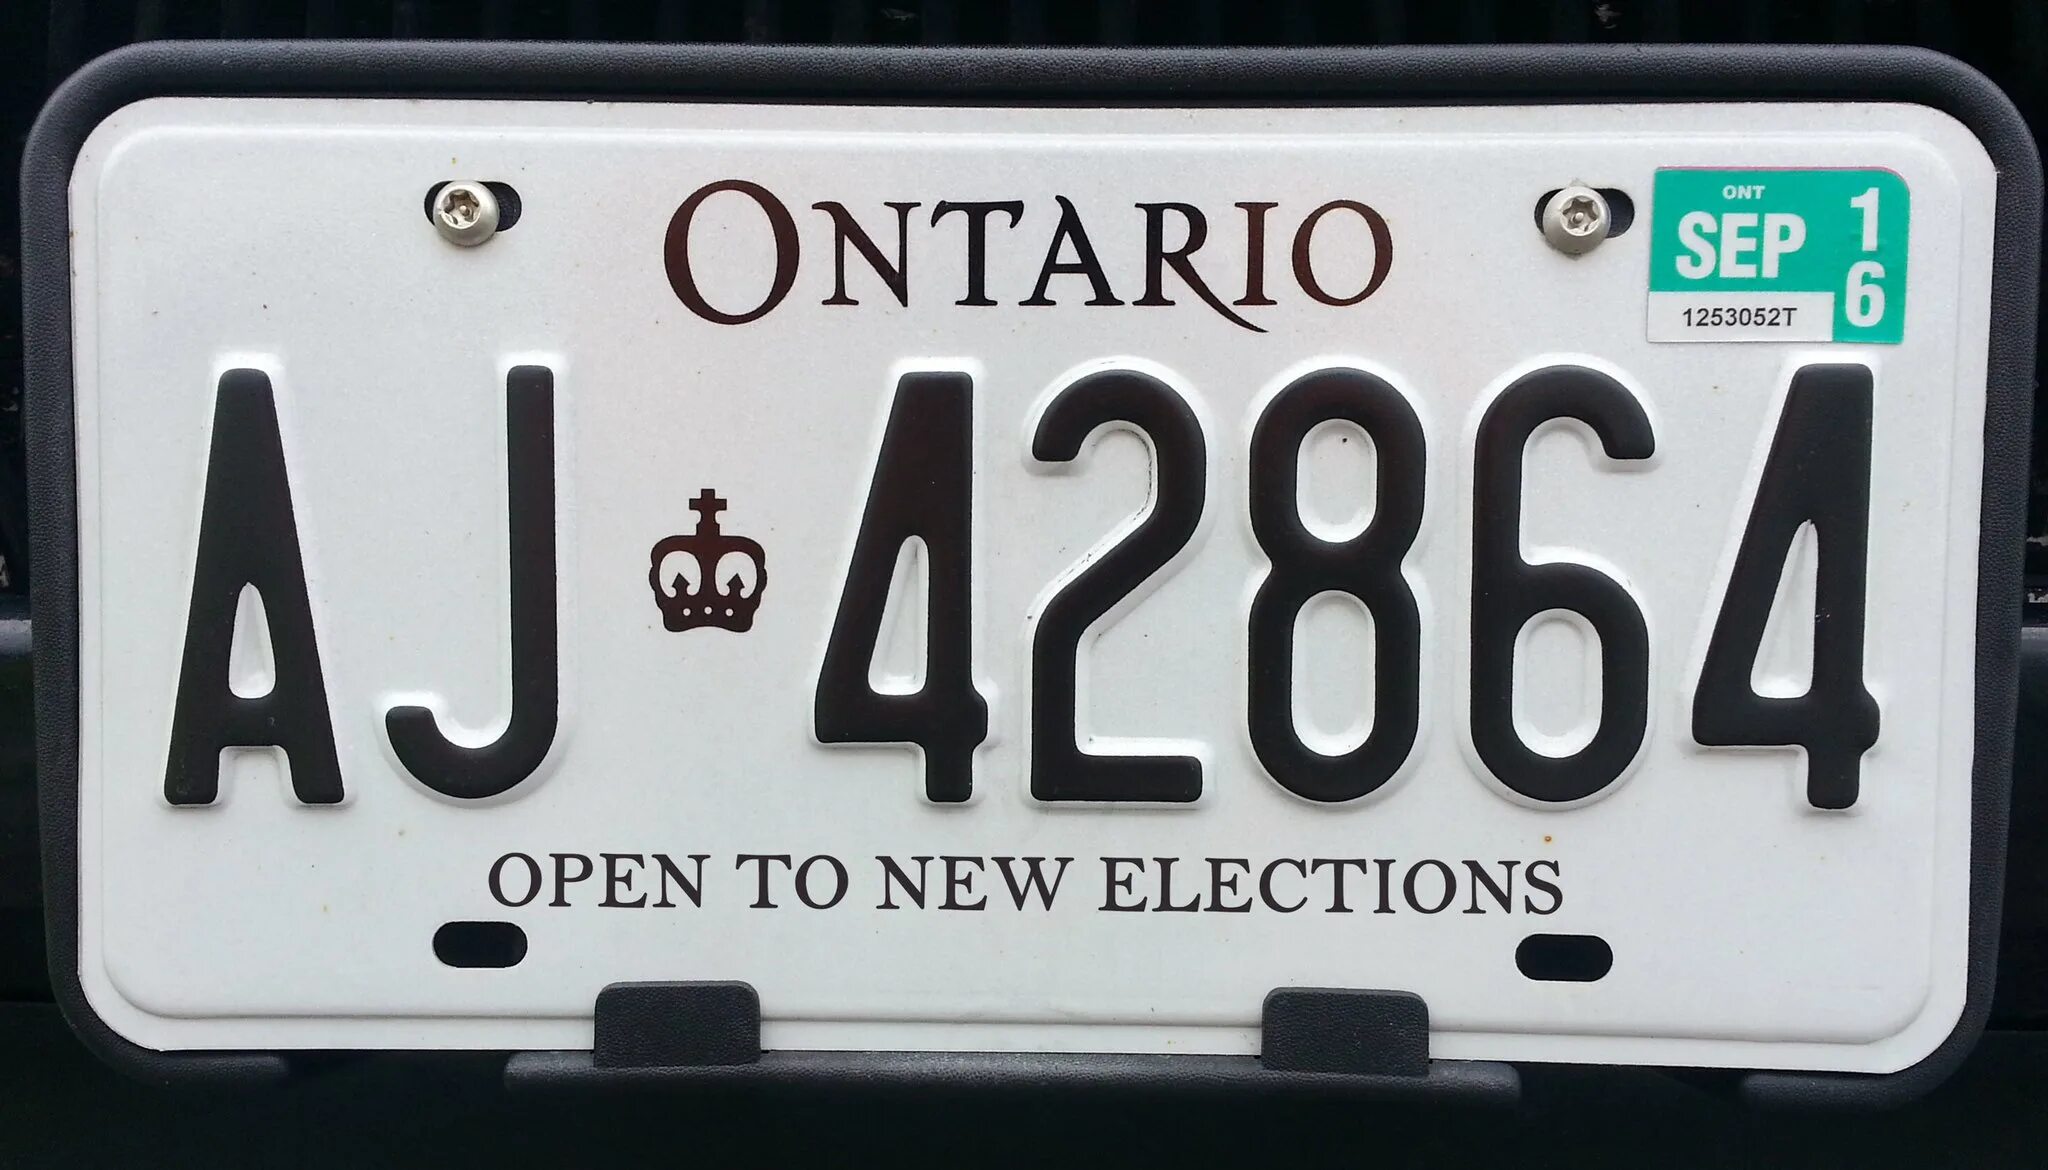 Номерной знак автомобиля. Иностранные номерные знаки автомобильные. Номерные знаки Онтарио. Американские номера. Купить зарубежный номер